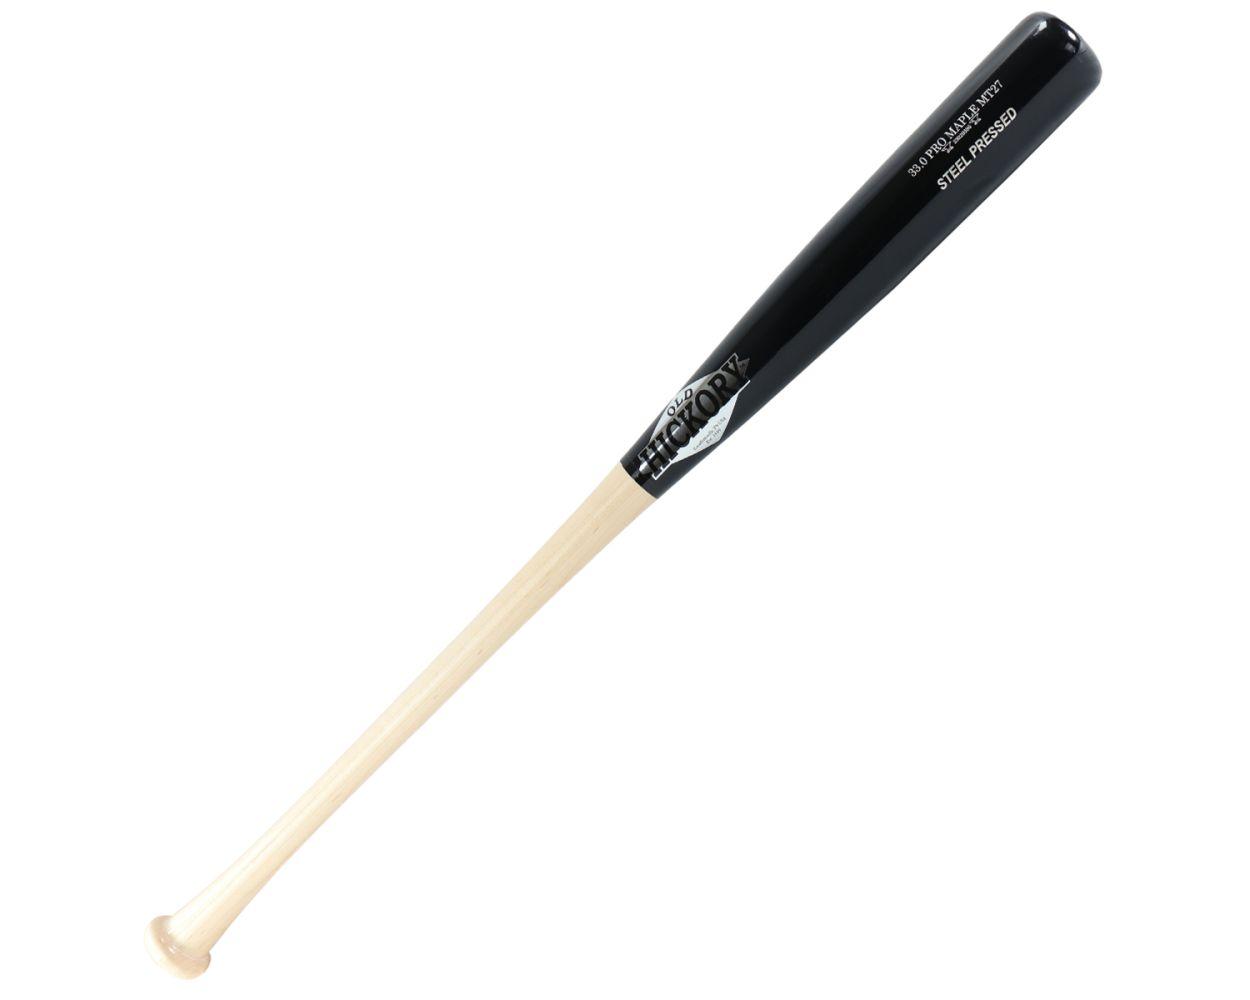 Old Hickory MT27 Steel Pressed Wood Bat Better Baseball Better Baseball